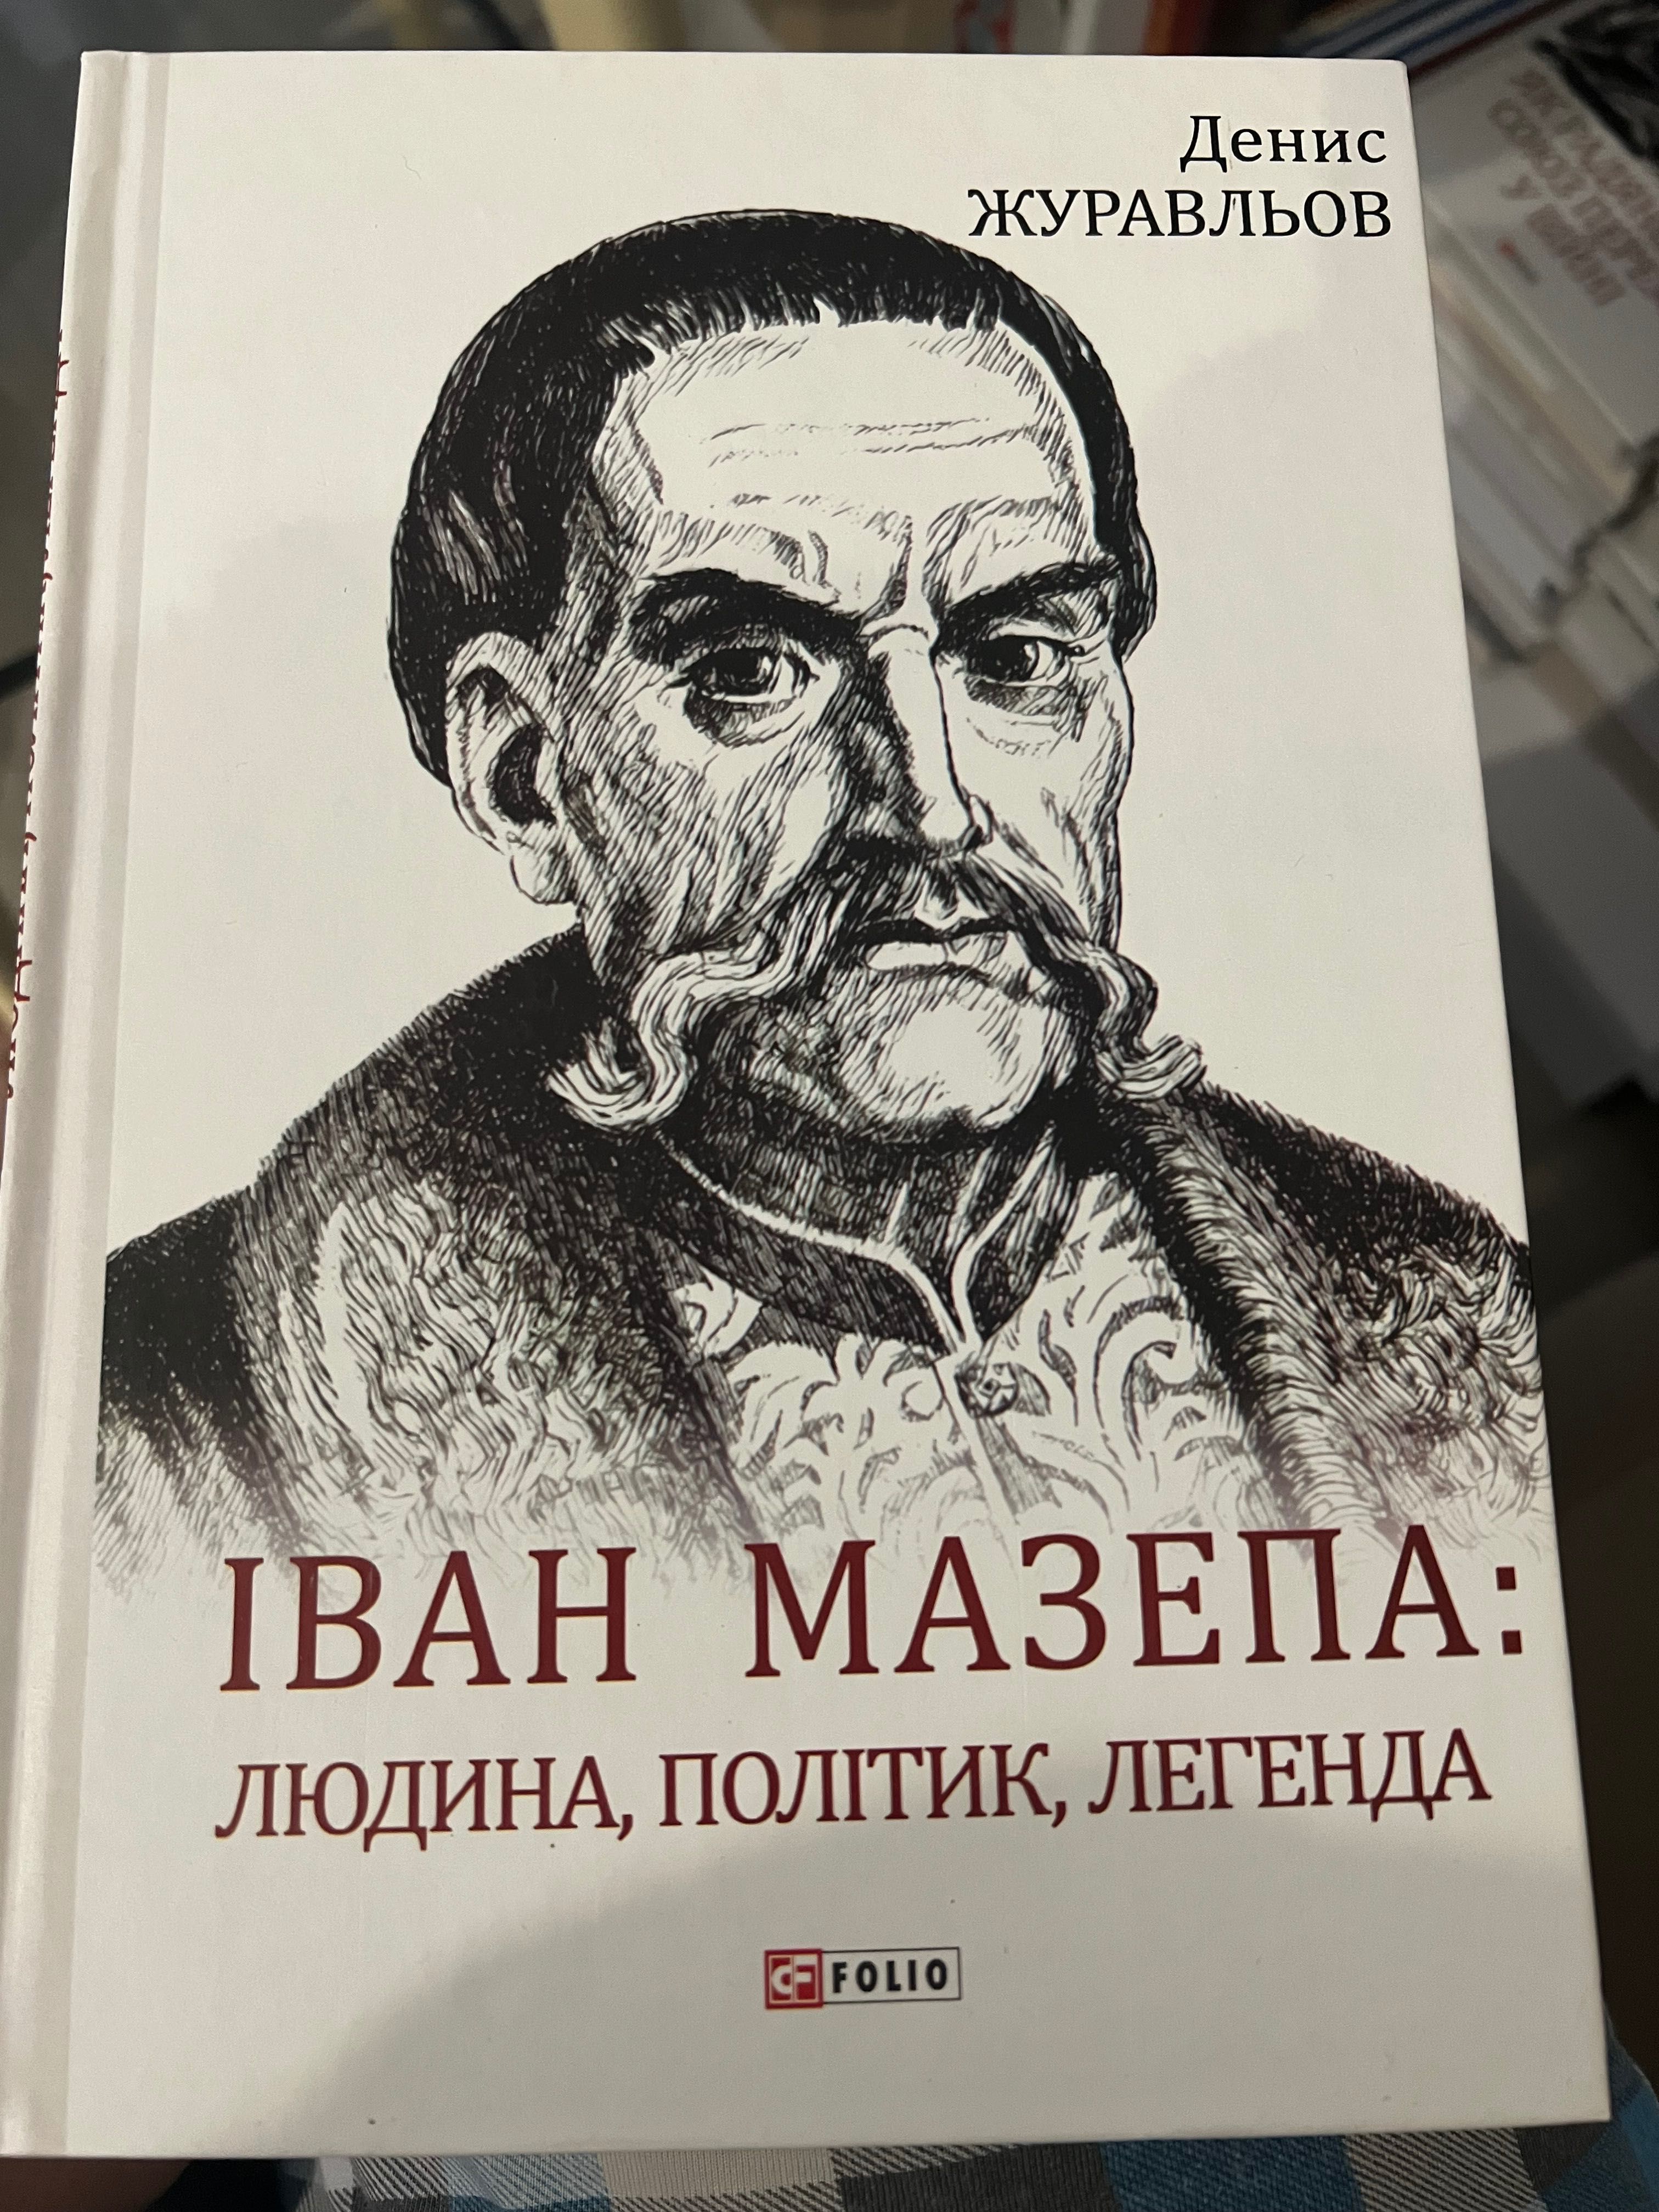 Мазепа книга авто Денис Журавльов